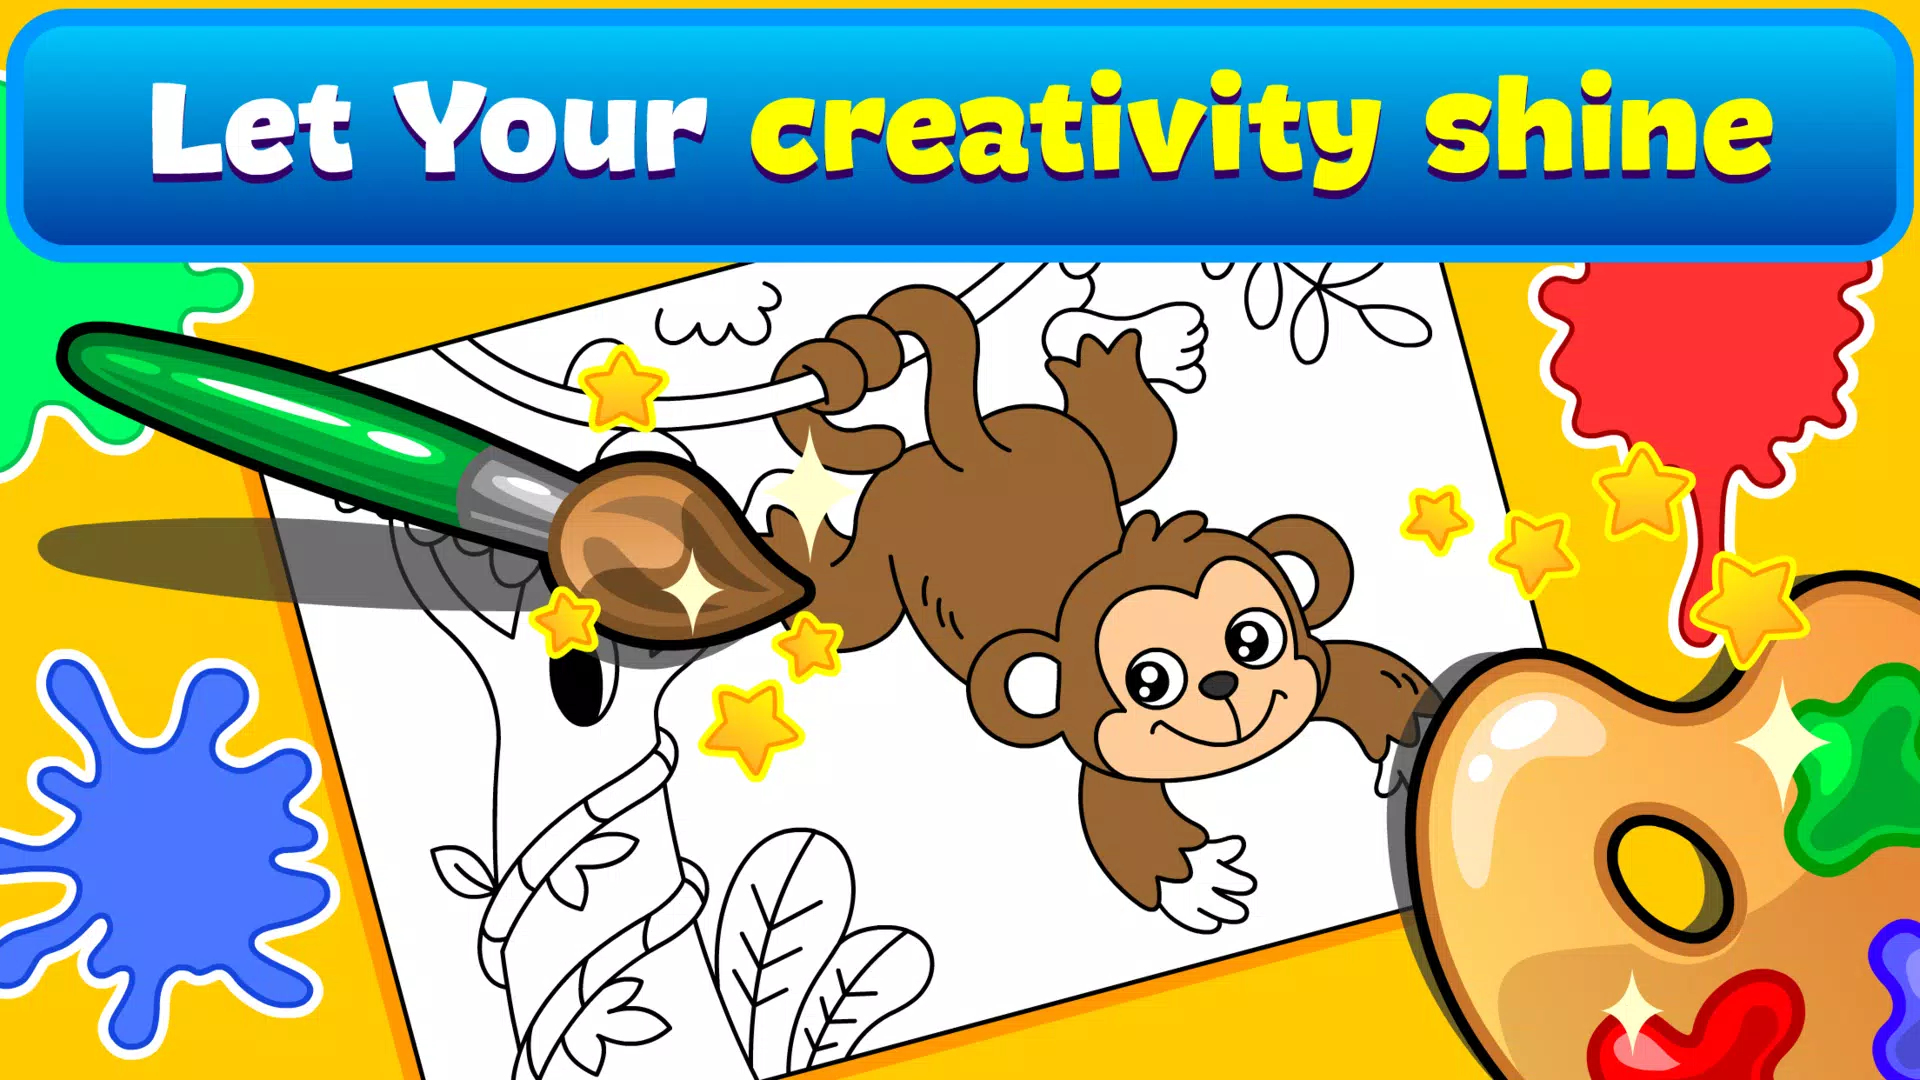 Download do APK de Livro colorir e jogos crianças para Android